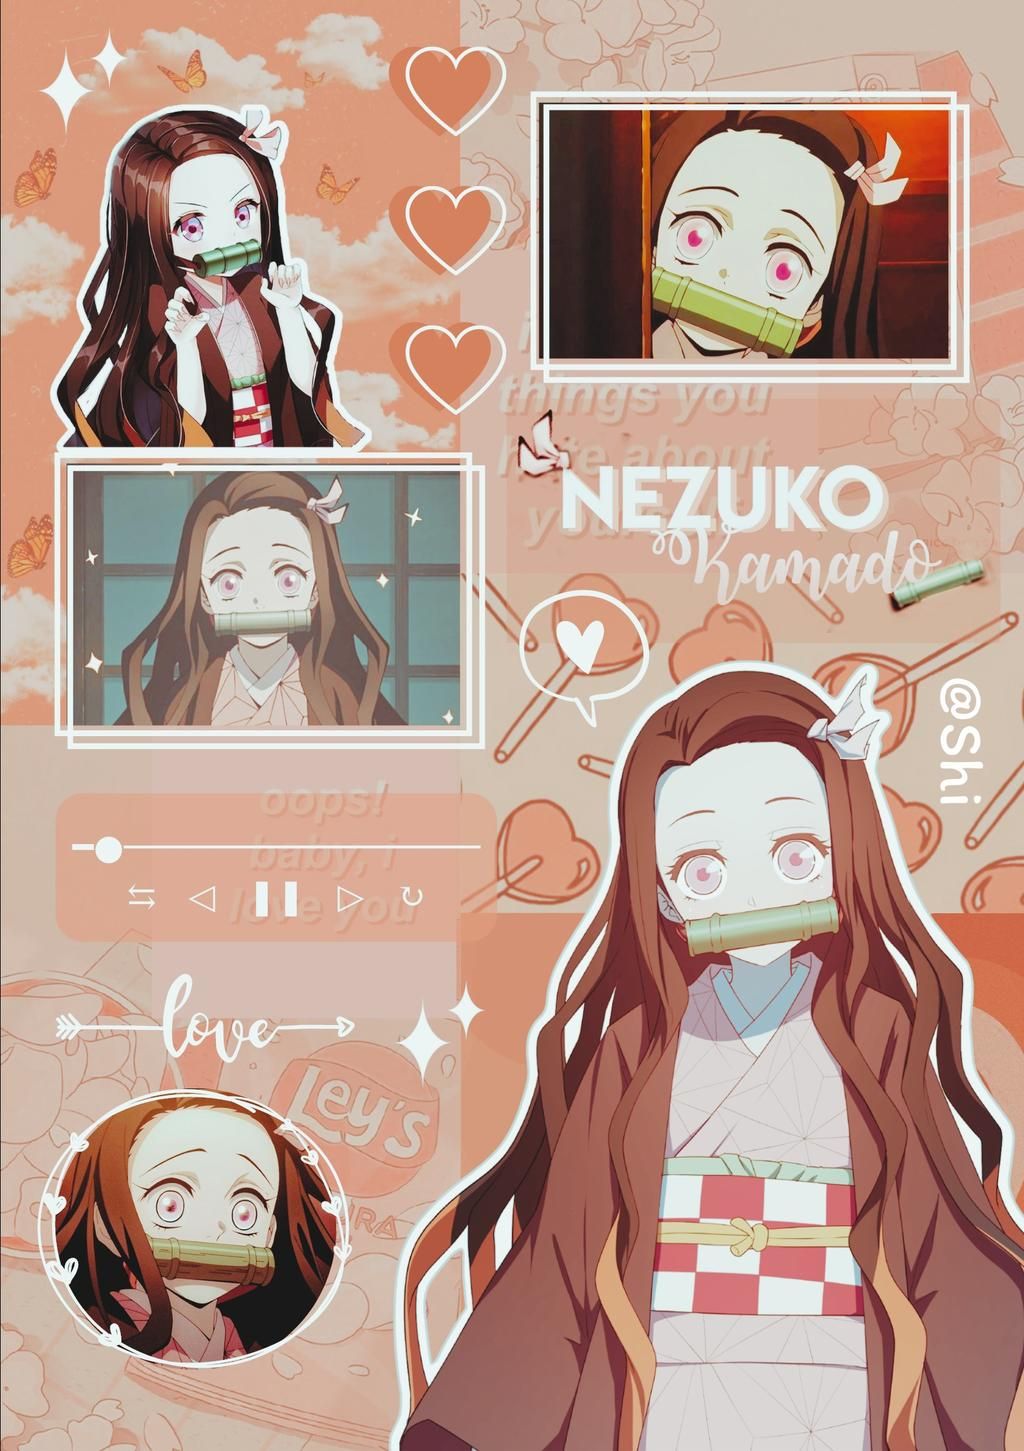 Hình ảnh Nezuko xinh đẹp ấn tượng dành cho fan của Anime